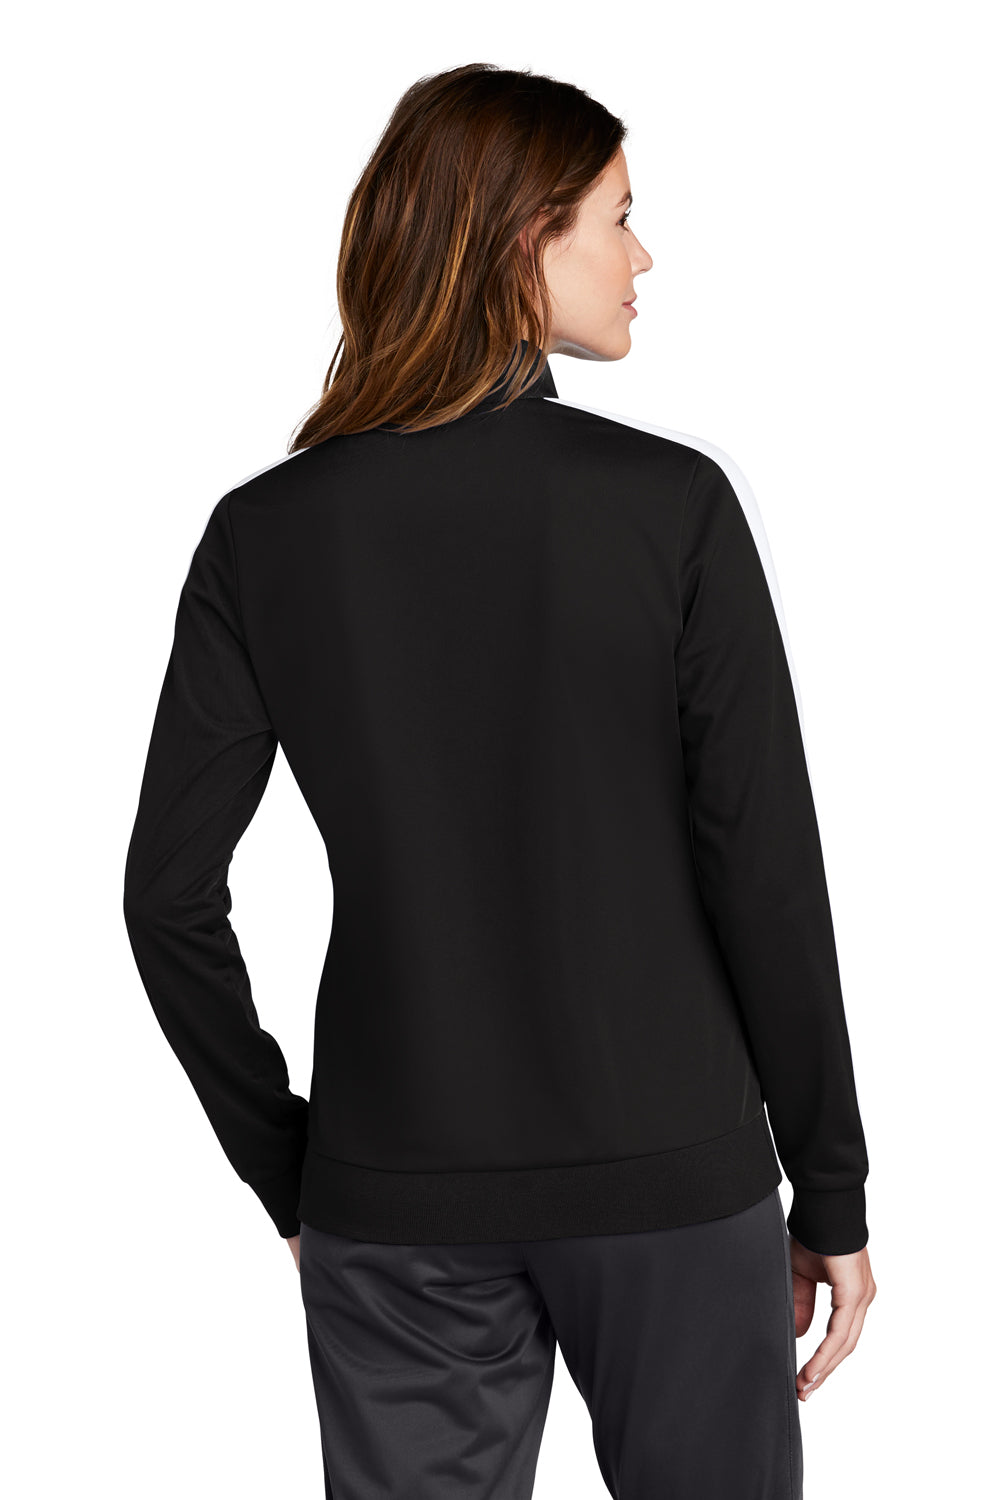 Sport-Tek Womens Full Zip Track Jacket Black/White Side